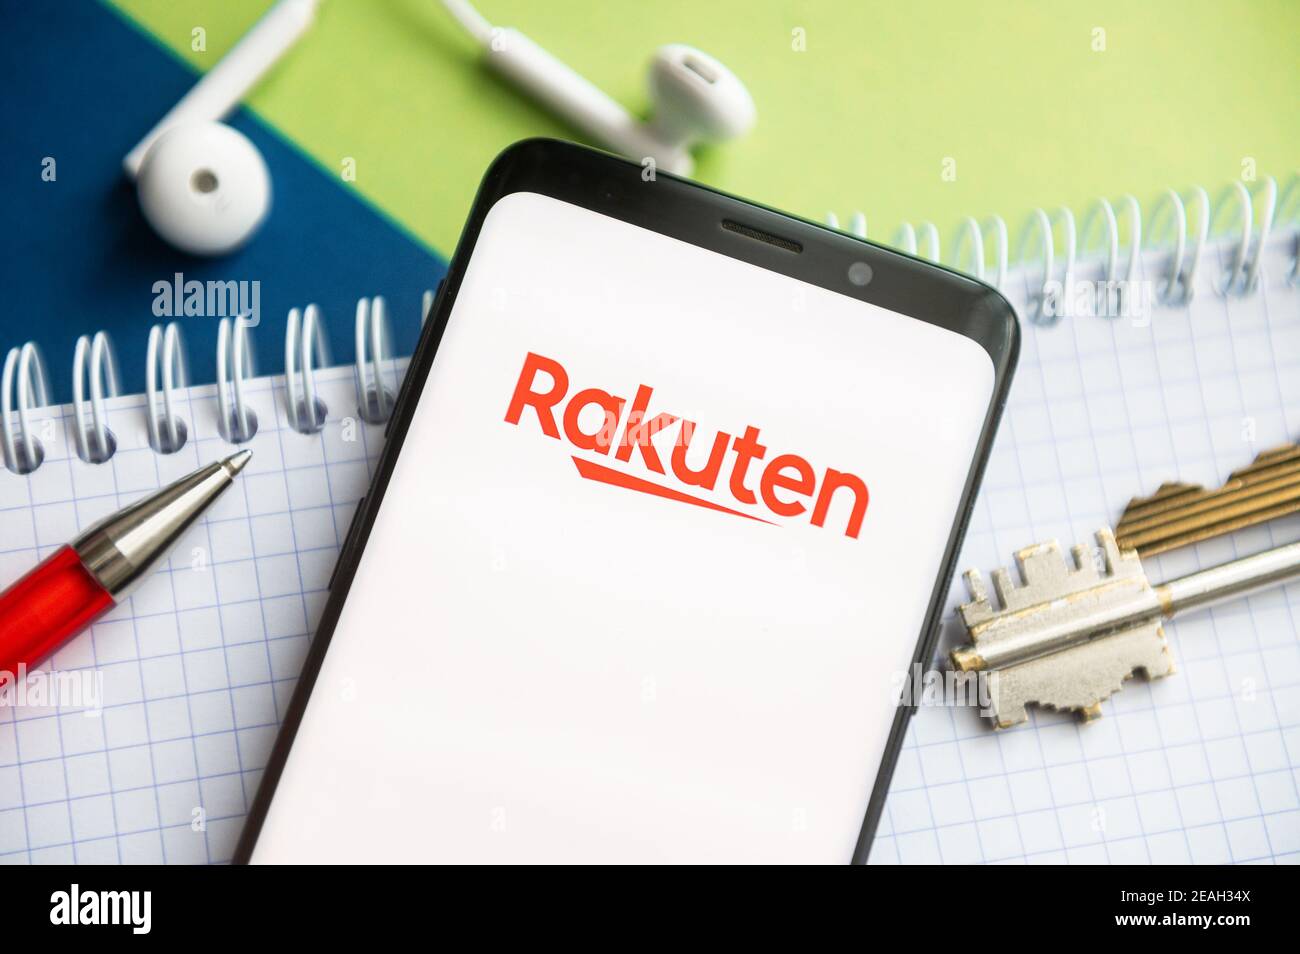 In questa illustrazione fotografica, viene visualizzato un logo Rakuten su uno smartphone con una penna, una chiave, un libro e un auricolare sullo sfondo. Foto Stock